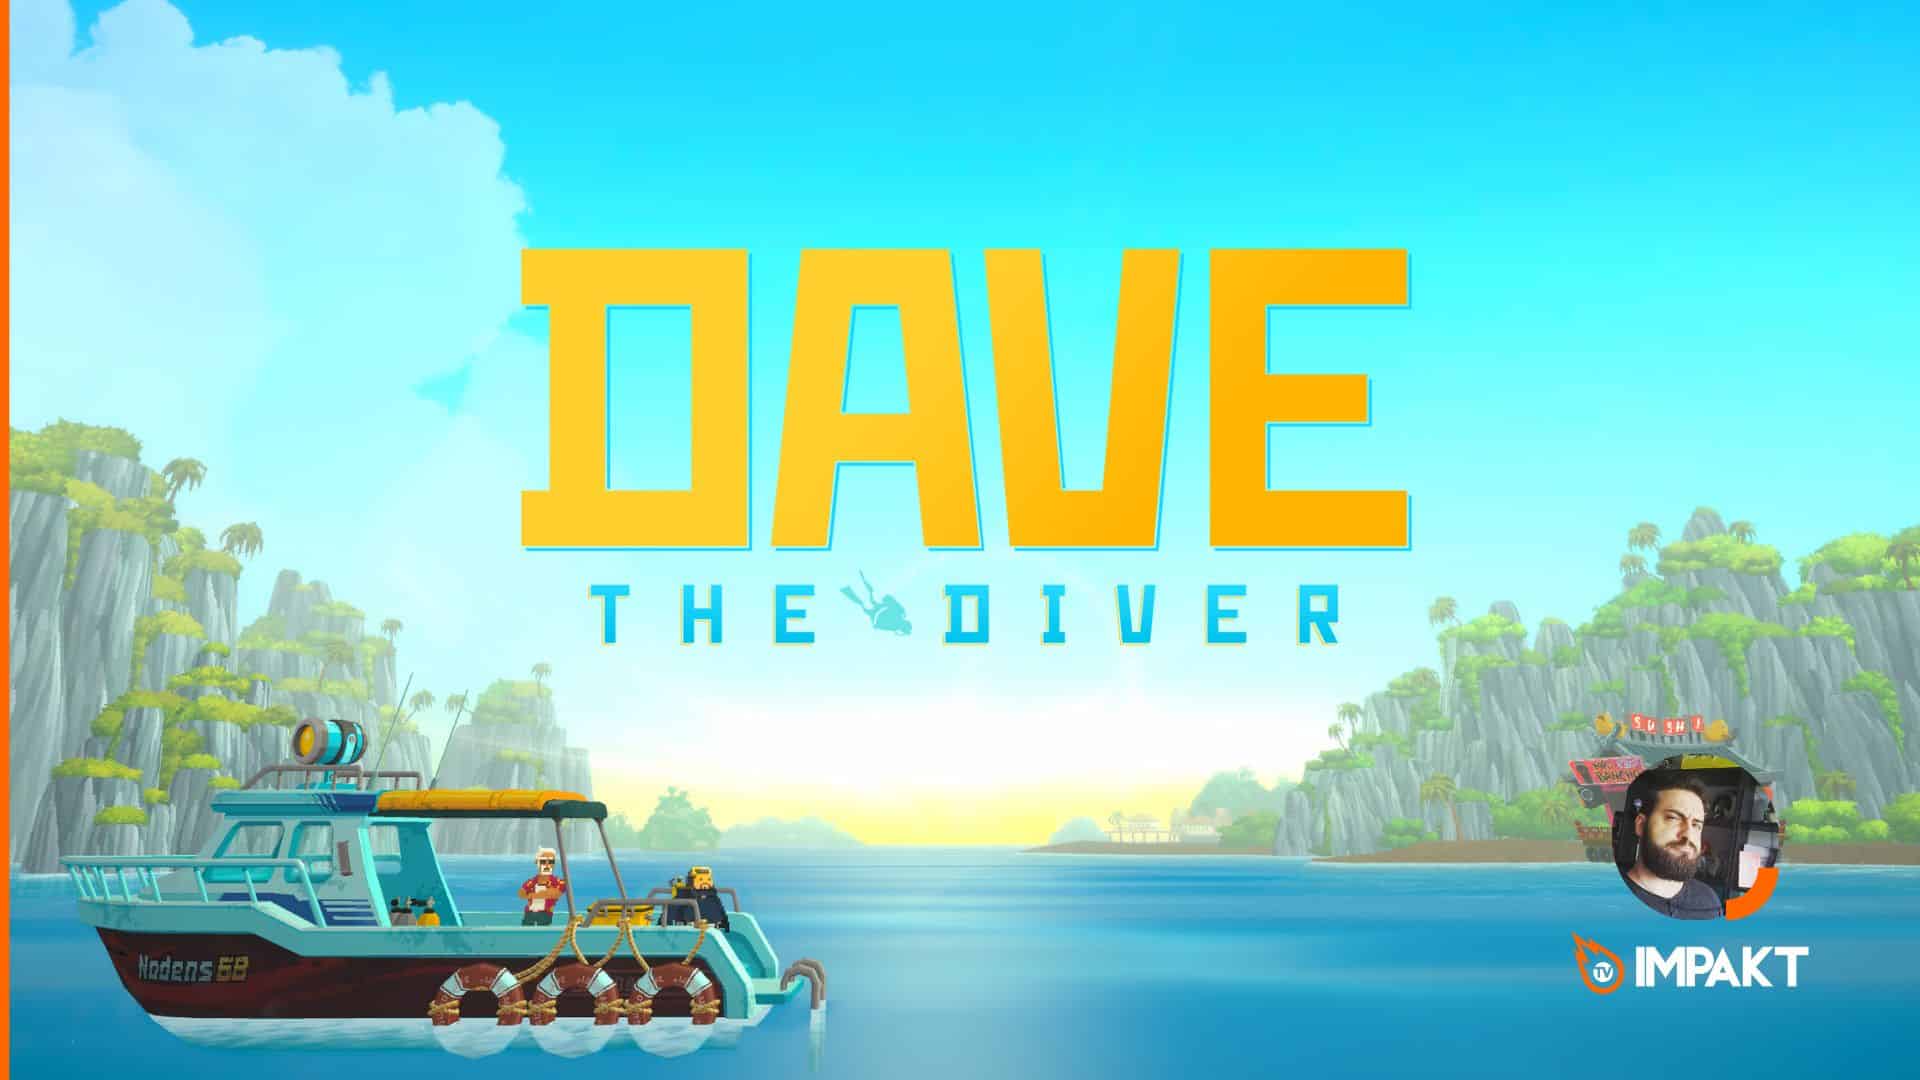 Opinião com impakt depois de 6 horas a jogar Dave the Diver